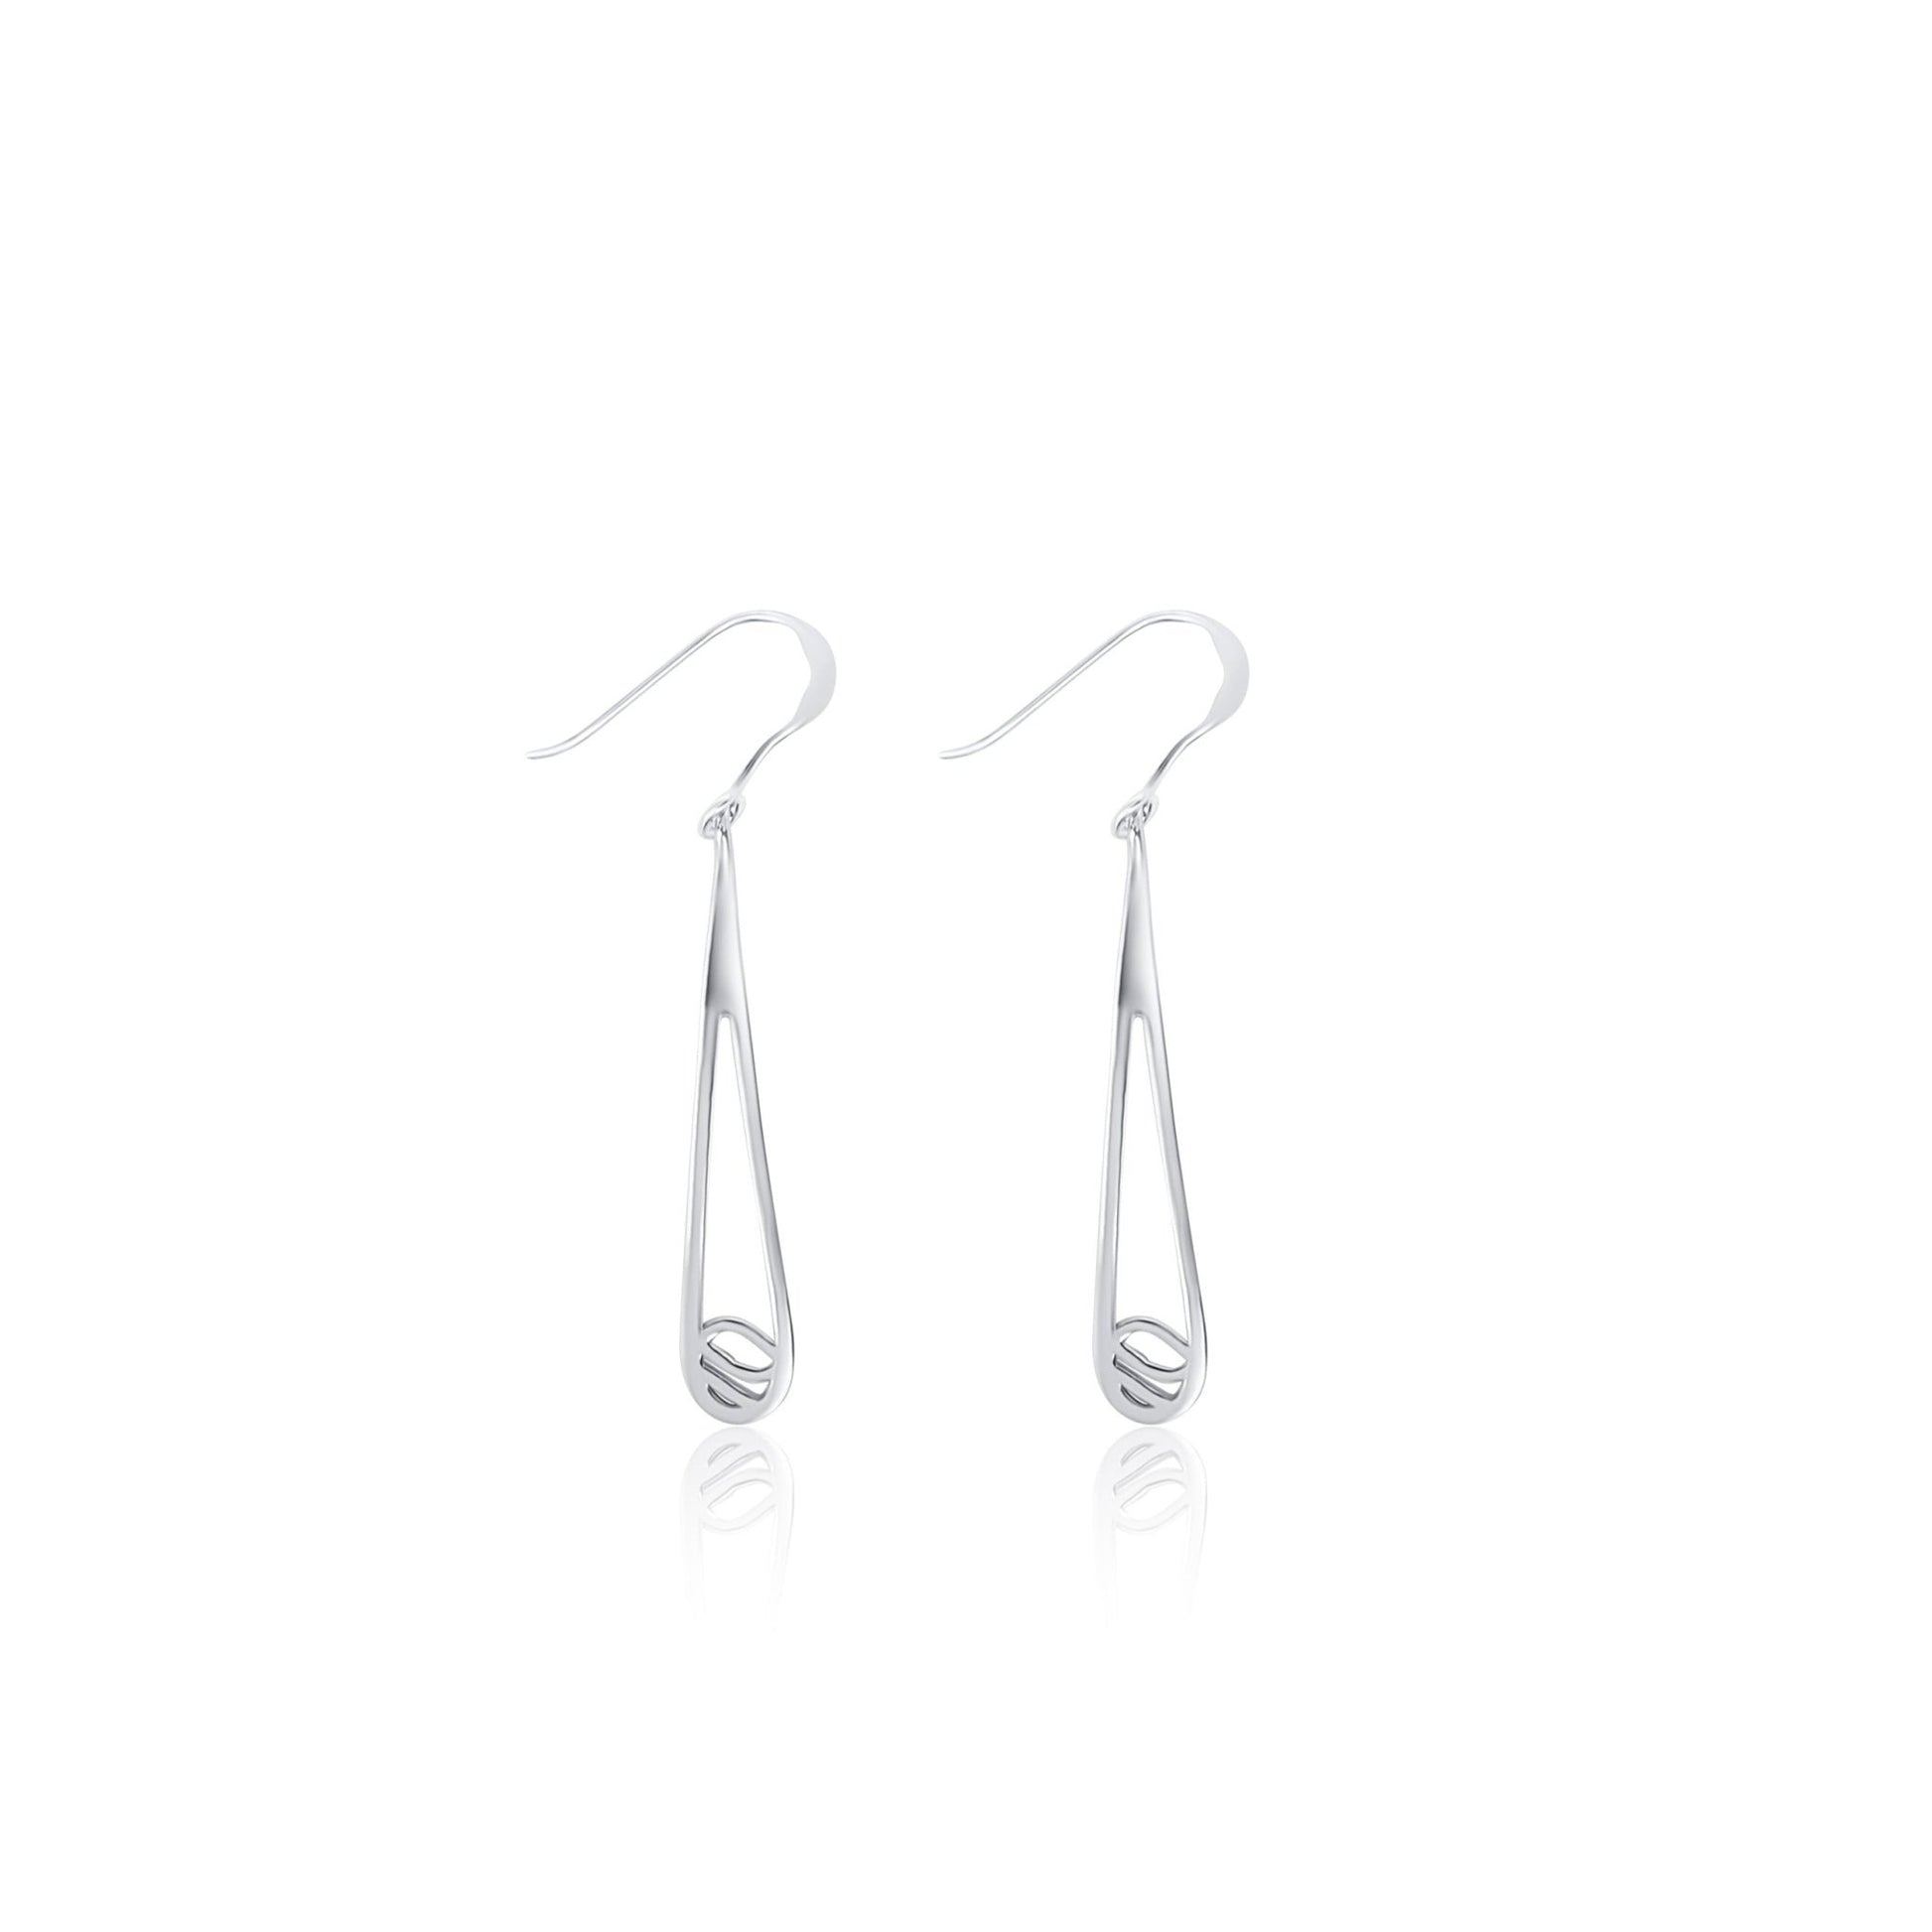 sterling silver water drop rain drop dangle earrings. Modern minimalist design